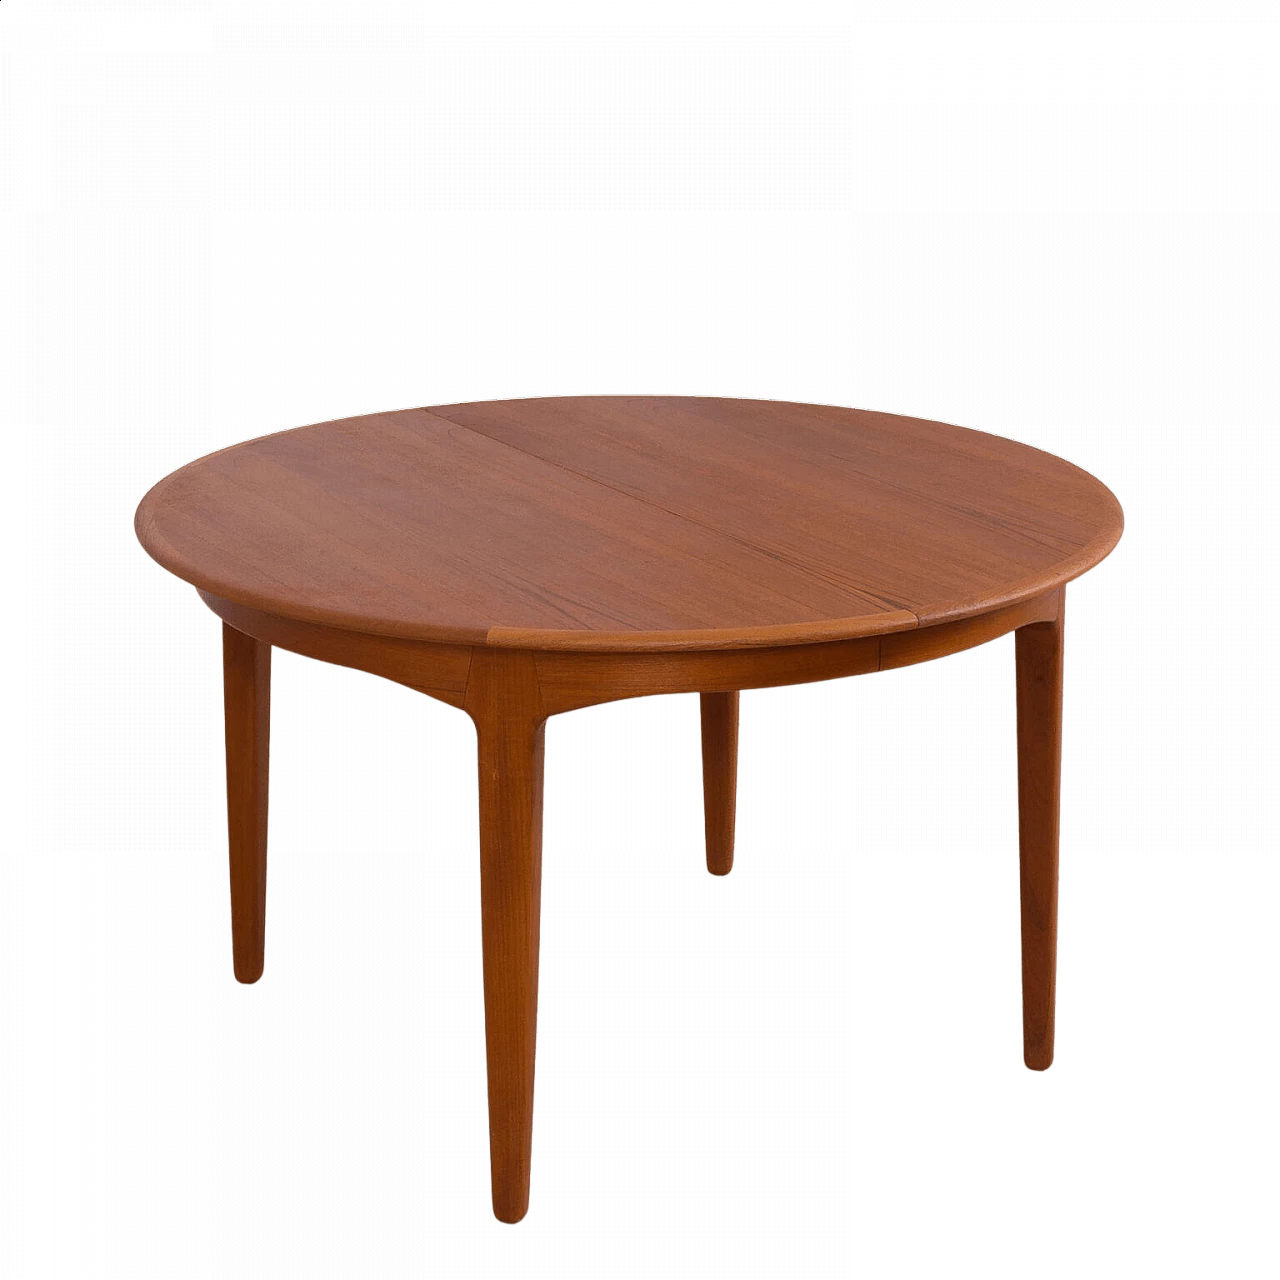 Round extendable table model 62 in teak by Henning Kjaernulf For Sorø Stolefabrik, 60s 1476122